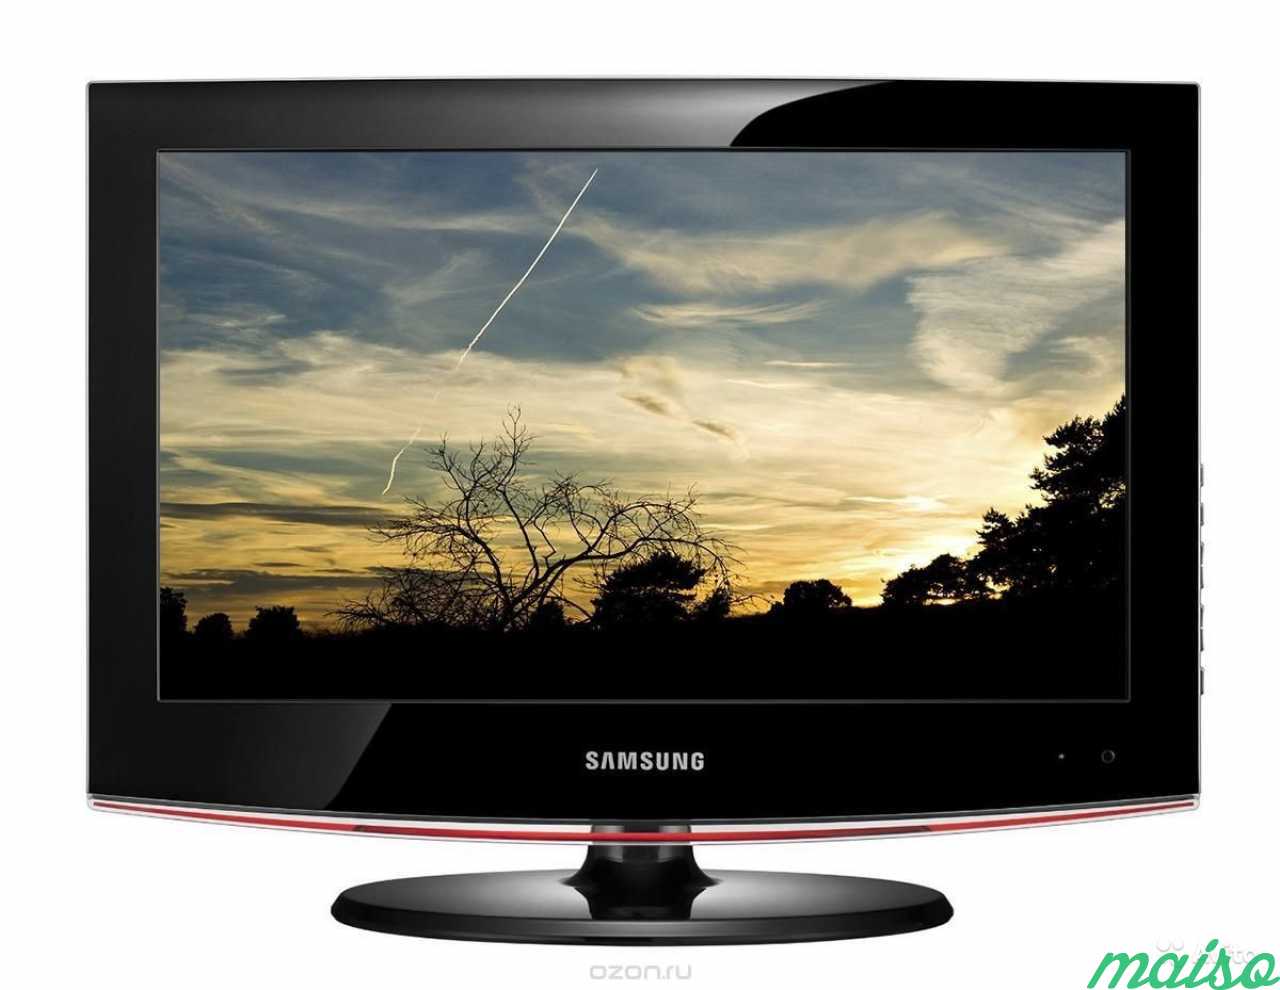 Телевизор куплю недорого купить в перми. Samsung le22b450. Samsung le-22c450. Телевизор Samsung le-32b450. Телевизор самсунг le32b650t6w.